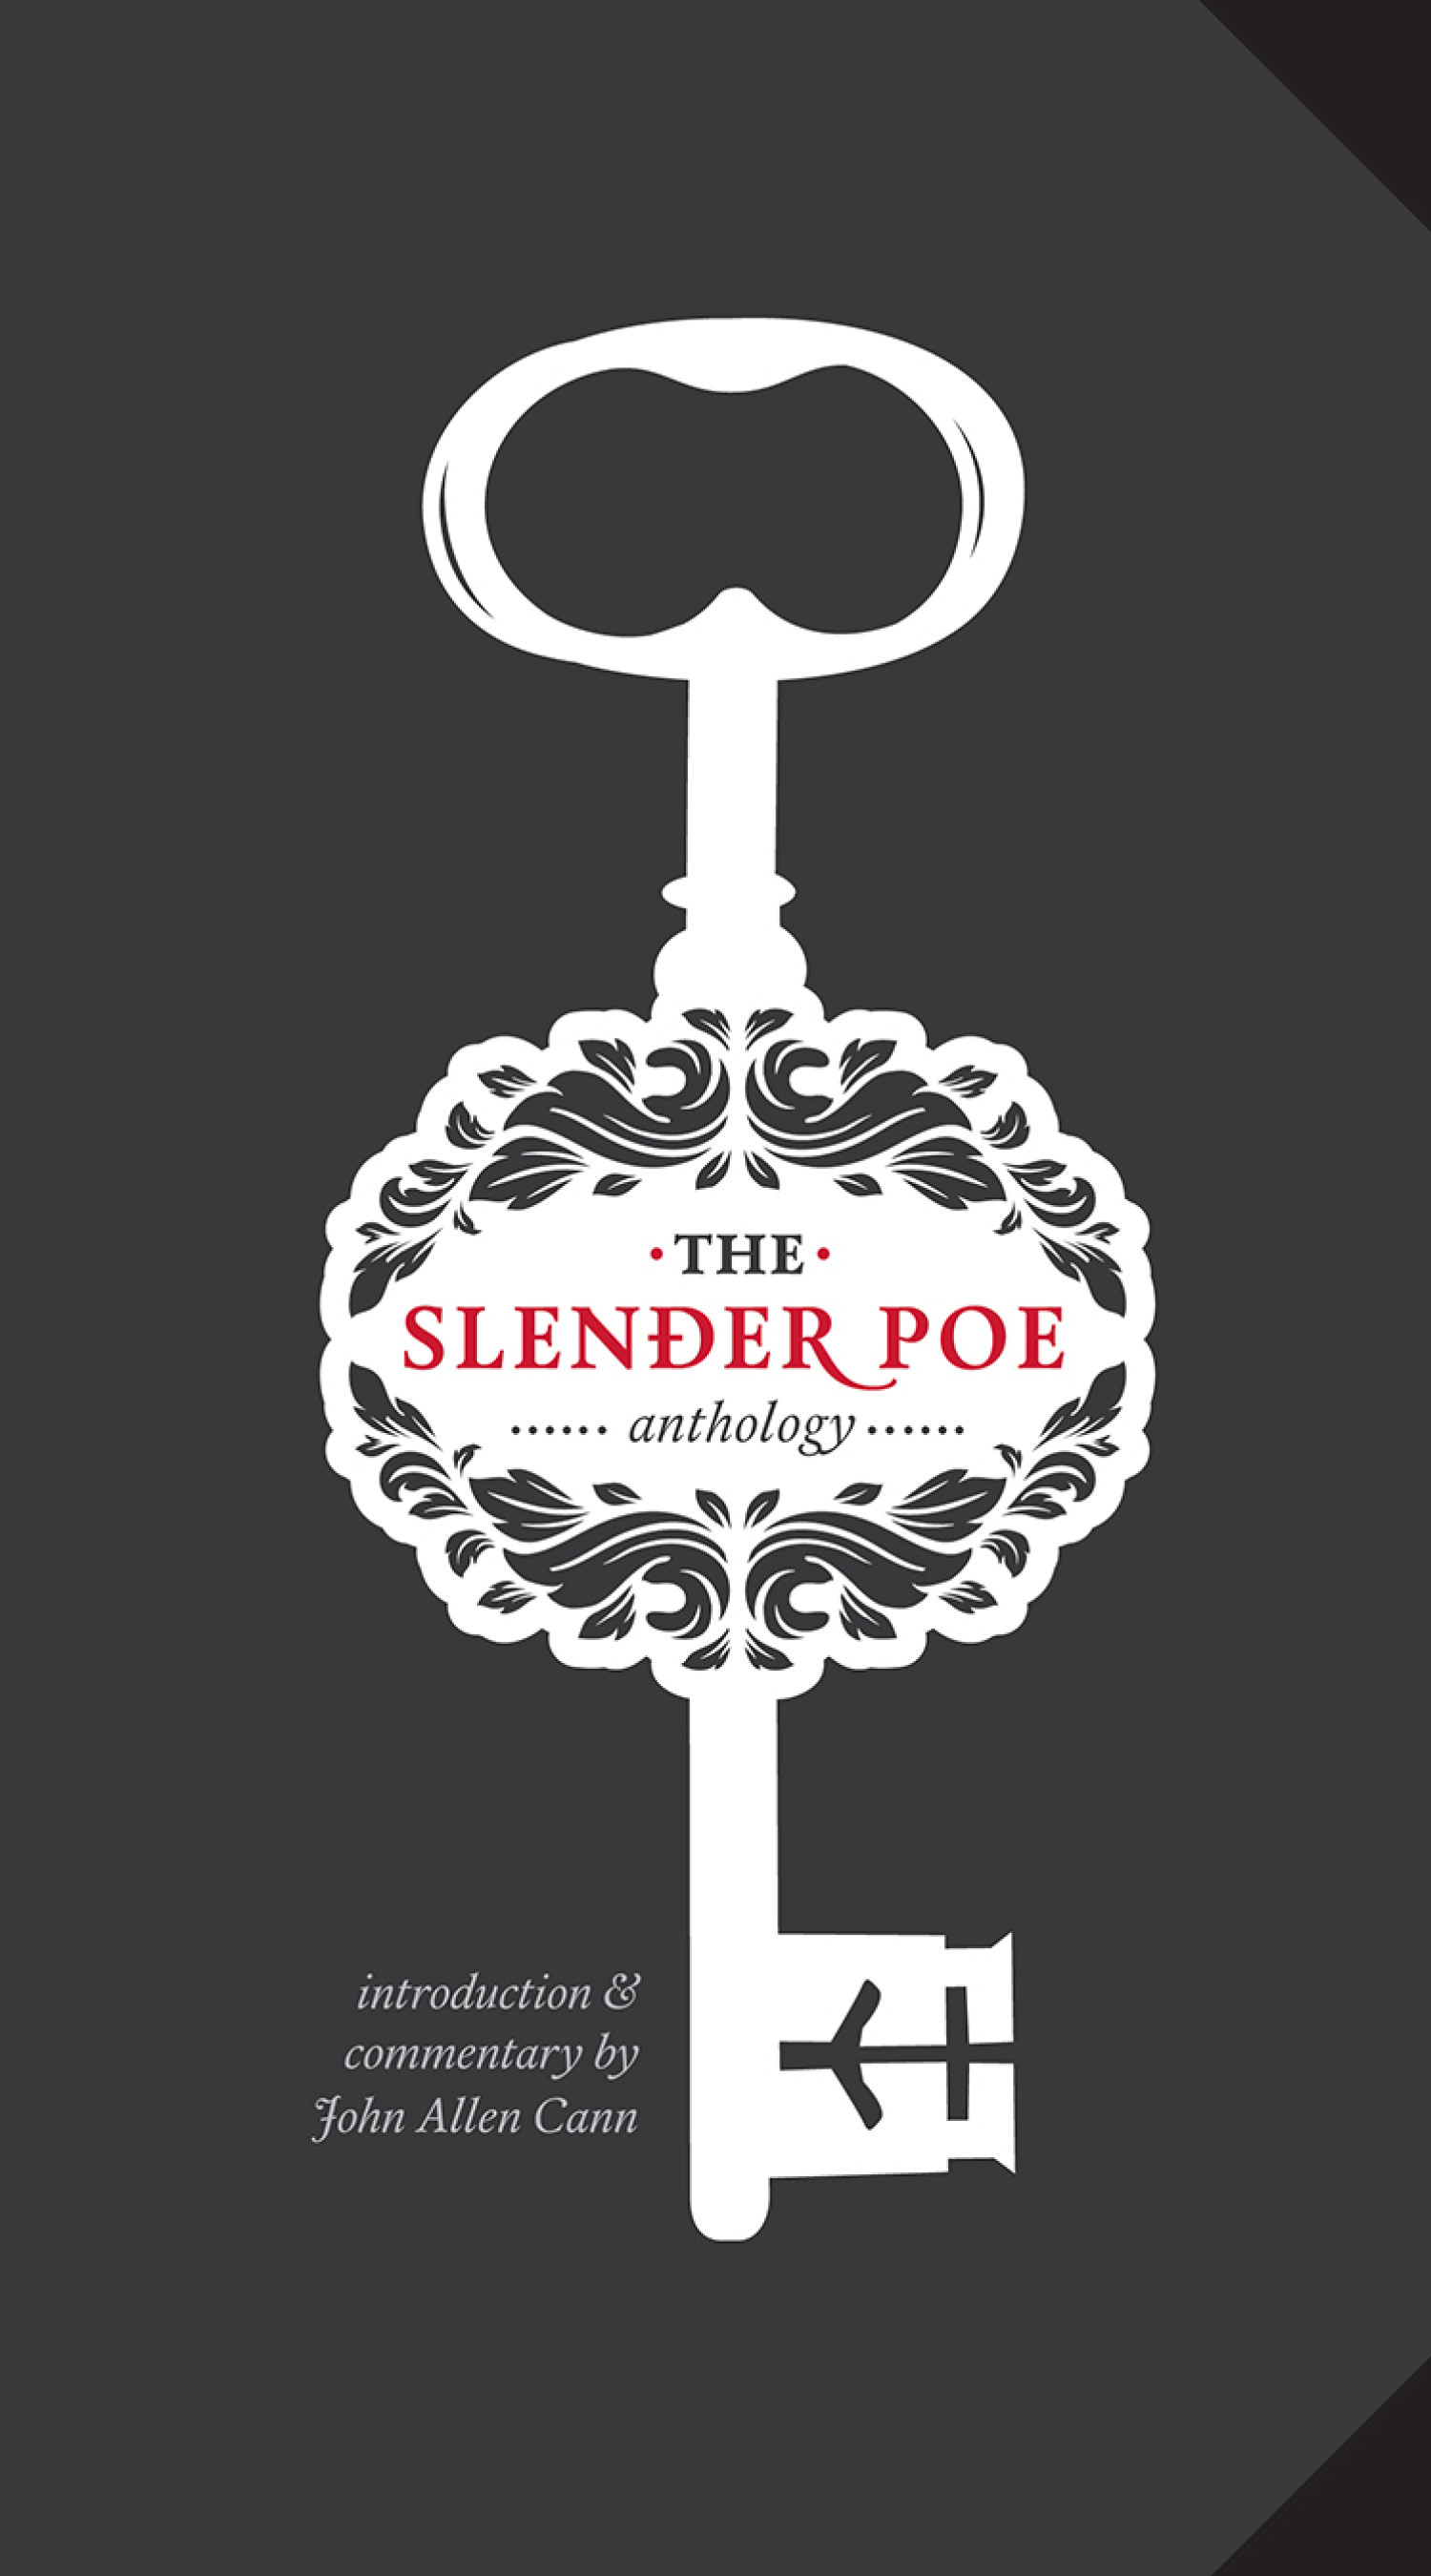 The Slender Poe  / John Allen Cann commentary